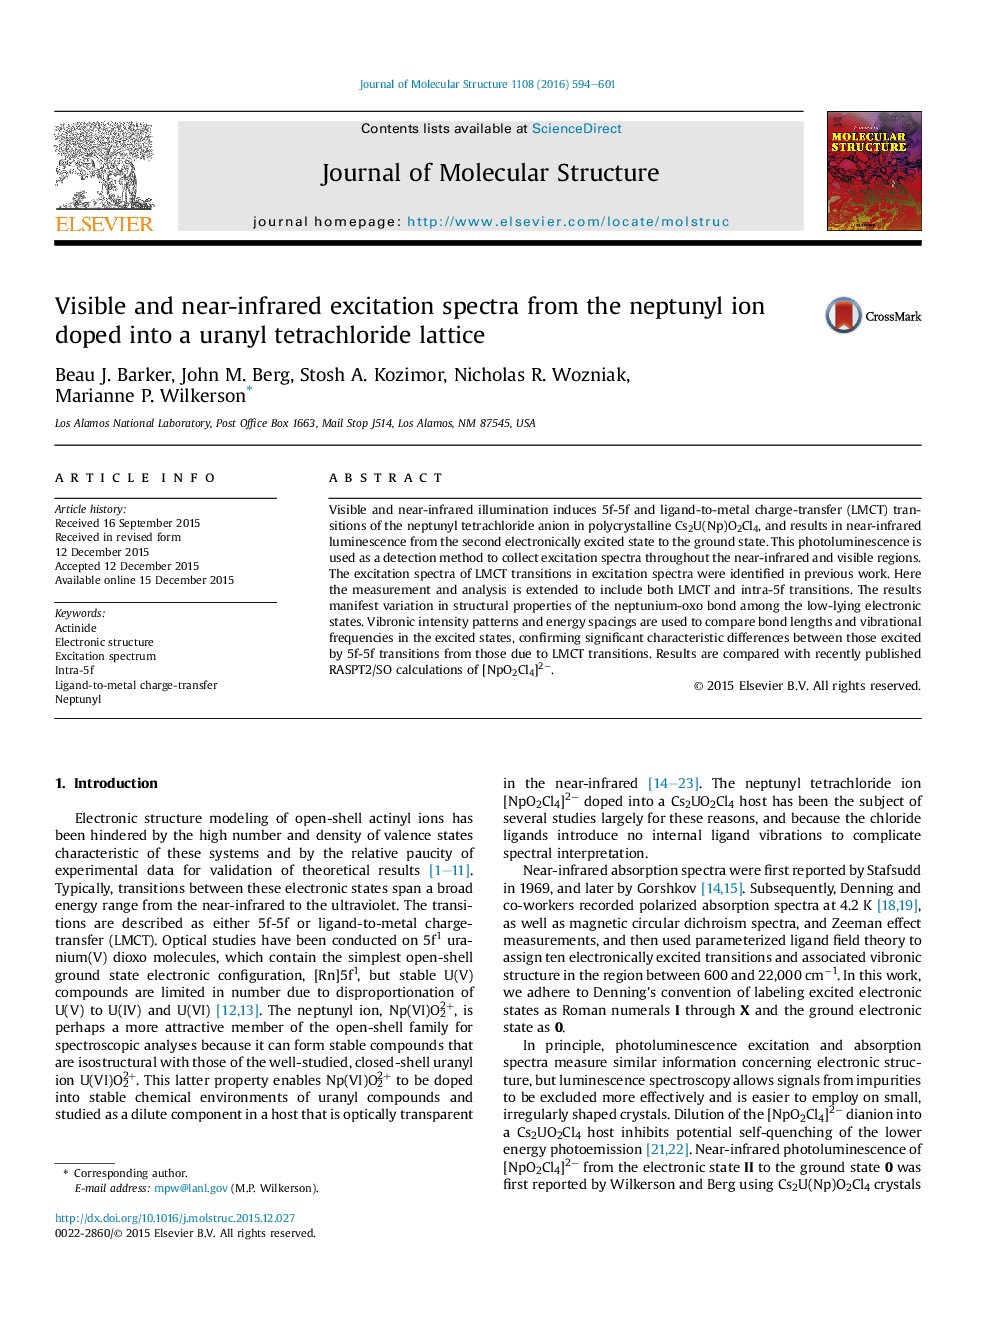 طیف های تحریک پذیری قابل مشاهده و نزدیک به مادون قرمز از یون نپوتونییل که به یک شبکه ی اورانیل تترا کلرید 